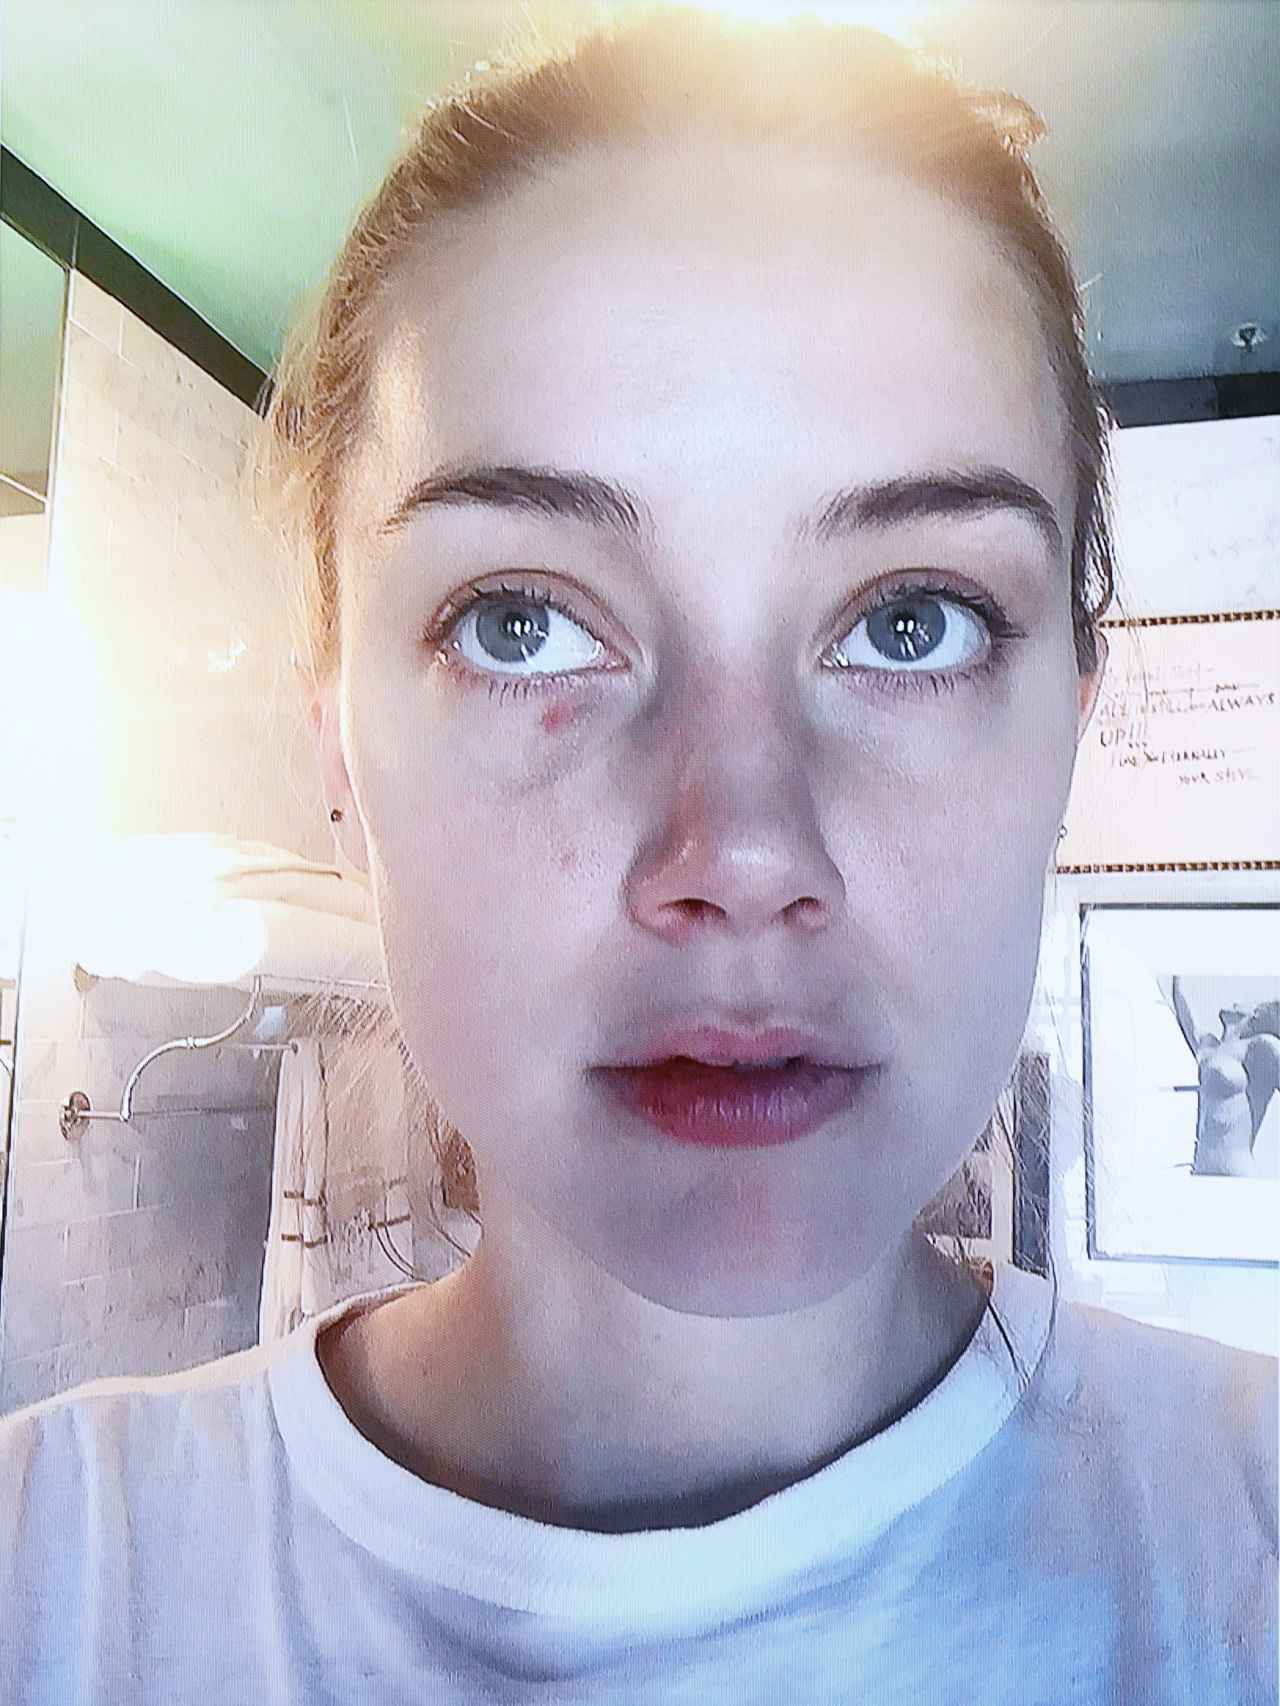 La actriz ha aportado fotografías con lesiones supuestamente producidas por Depp durante sus peleas.